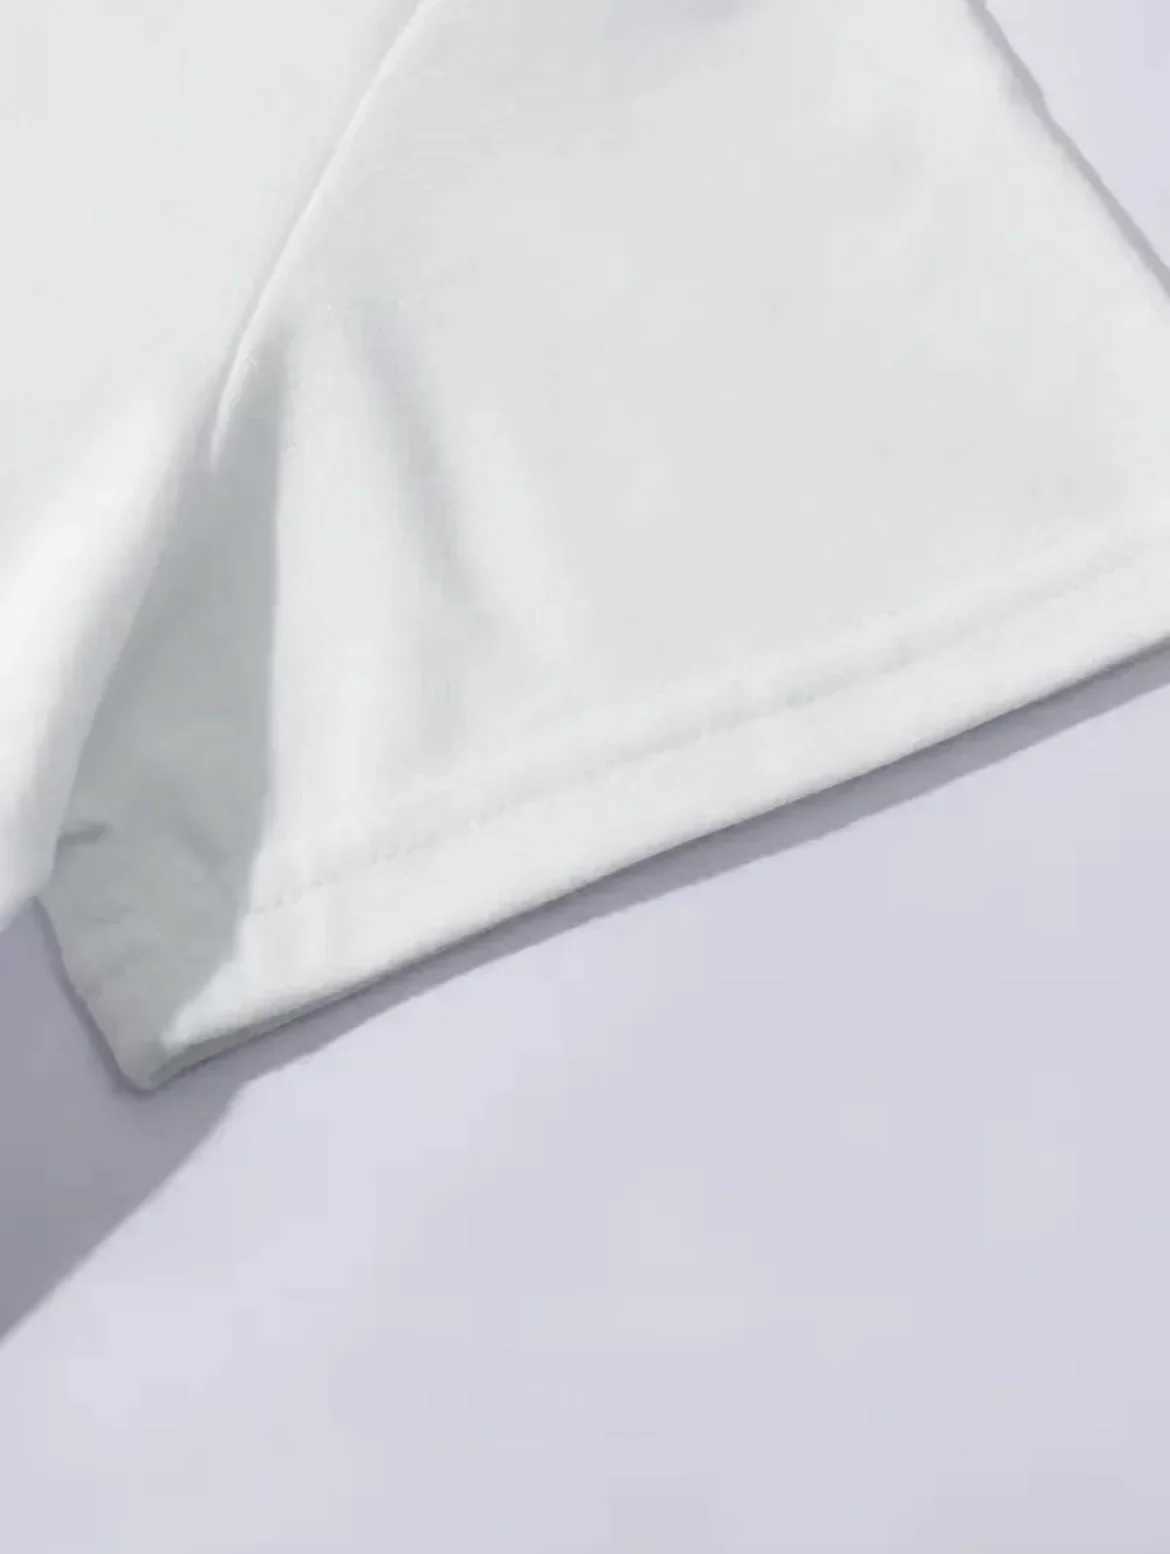 Женская футболка ретро-принт четвертого крыла Летняя футболка Новая вершина The Line Printing Fun и парадигма с короткими рукавами.